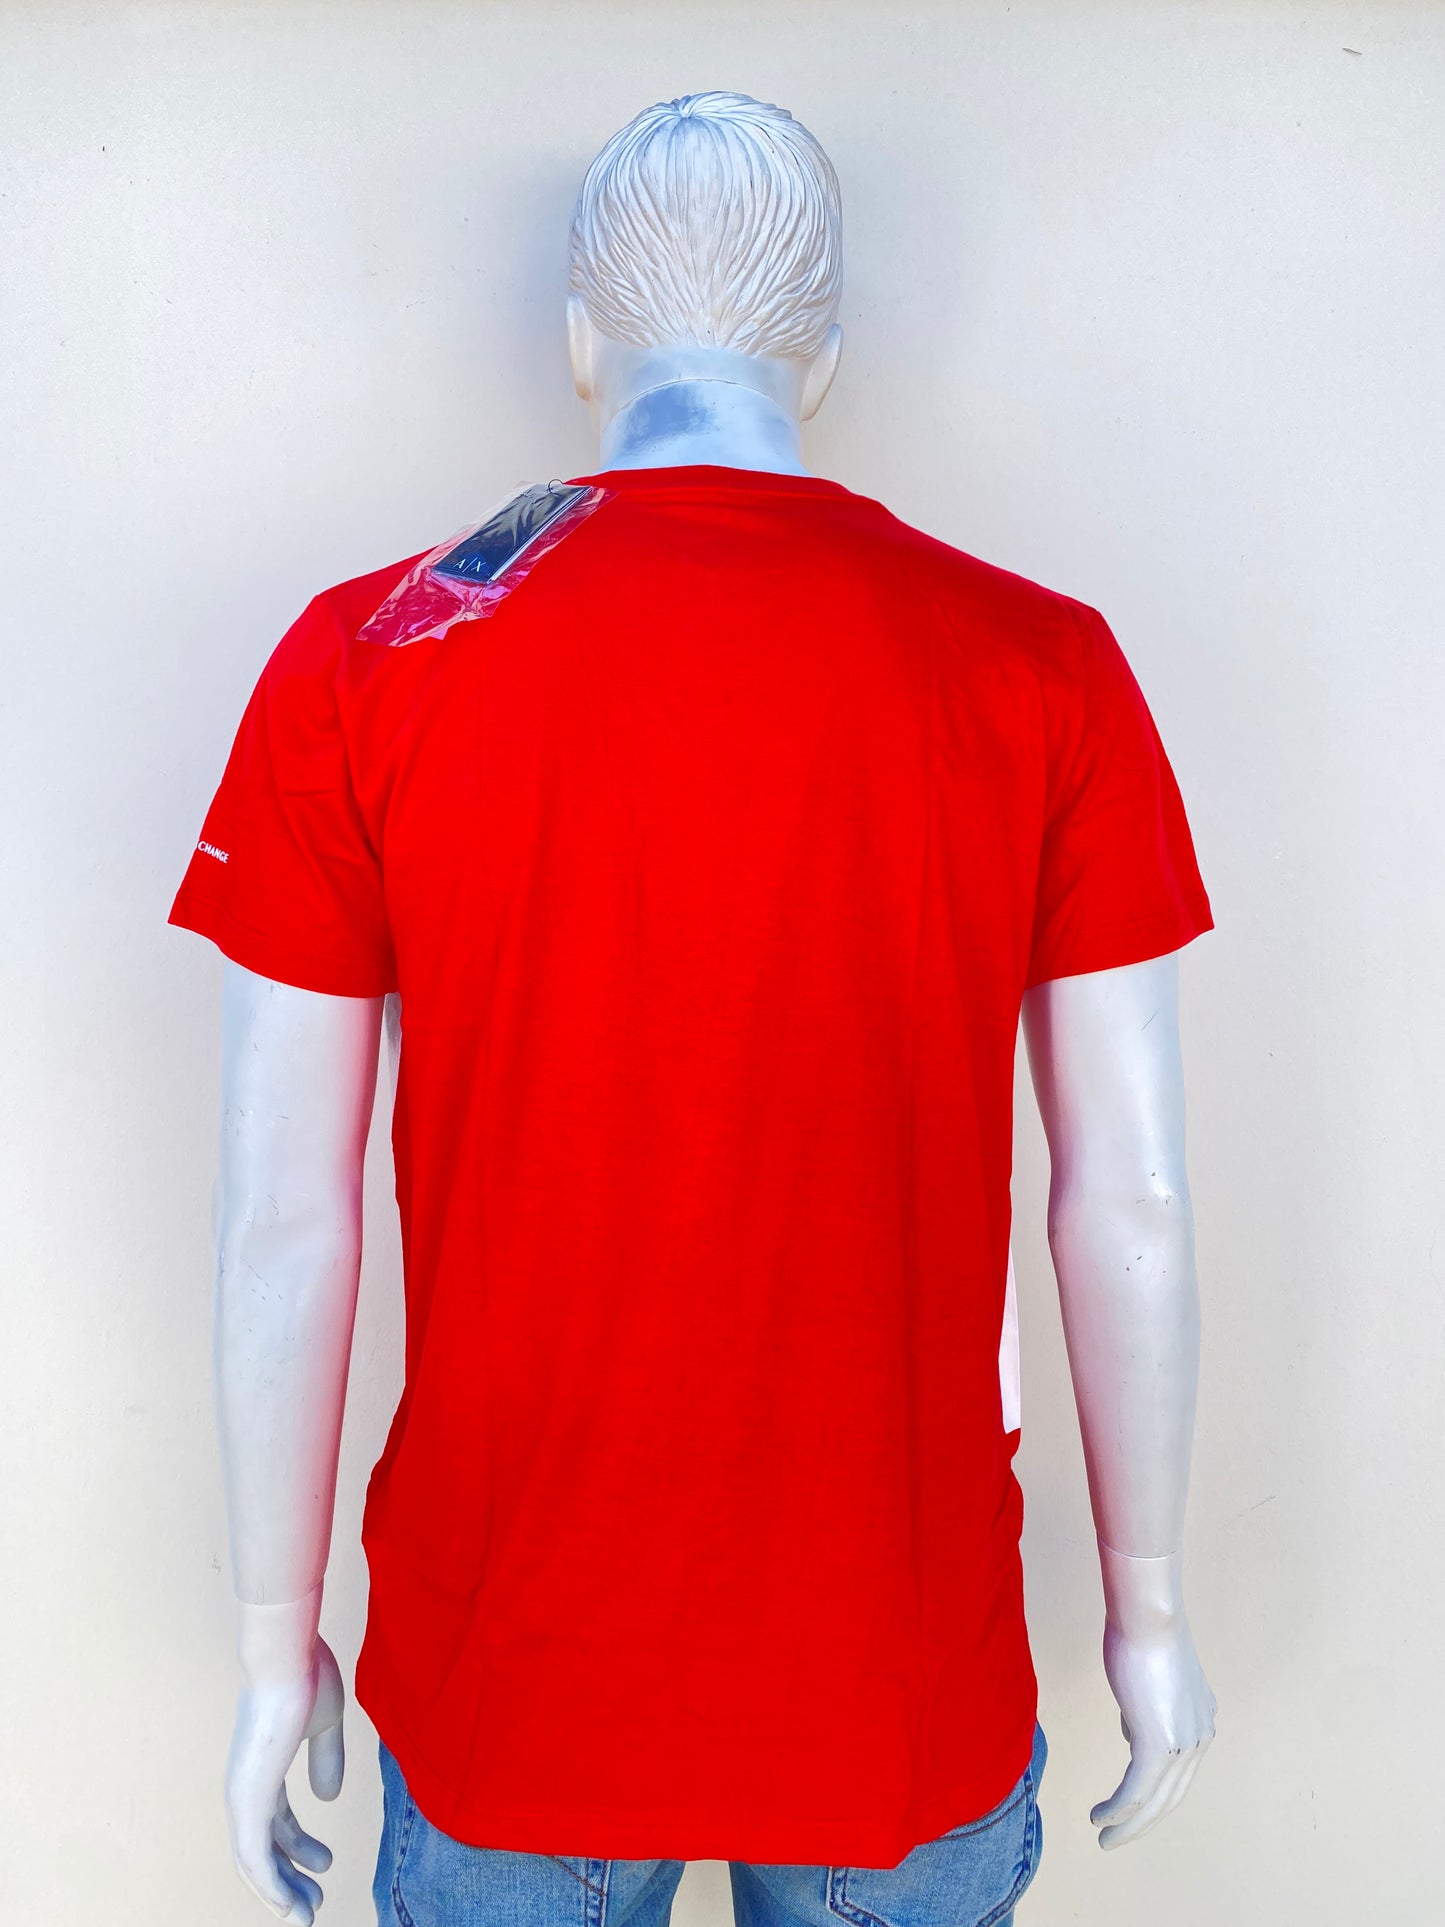 T-shirt Armani Exchange original, rojo con logotipo de la marca AX en blanco.